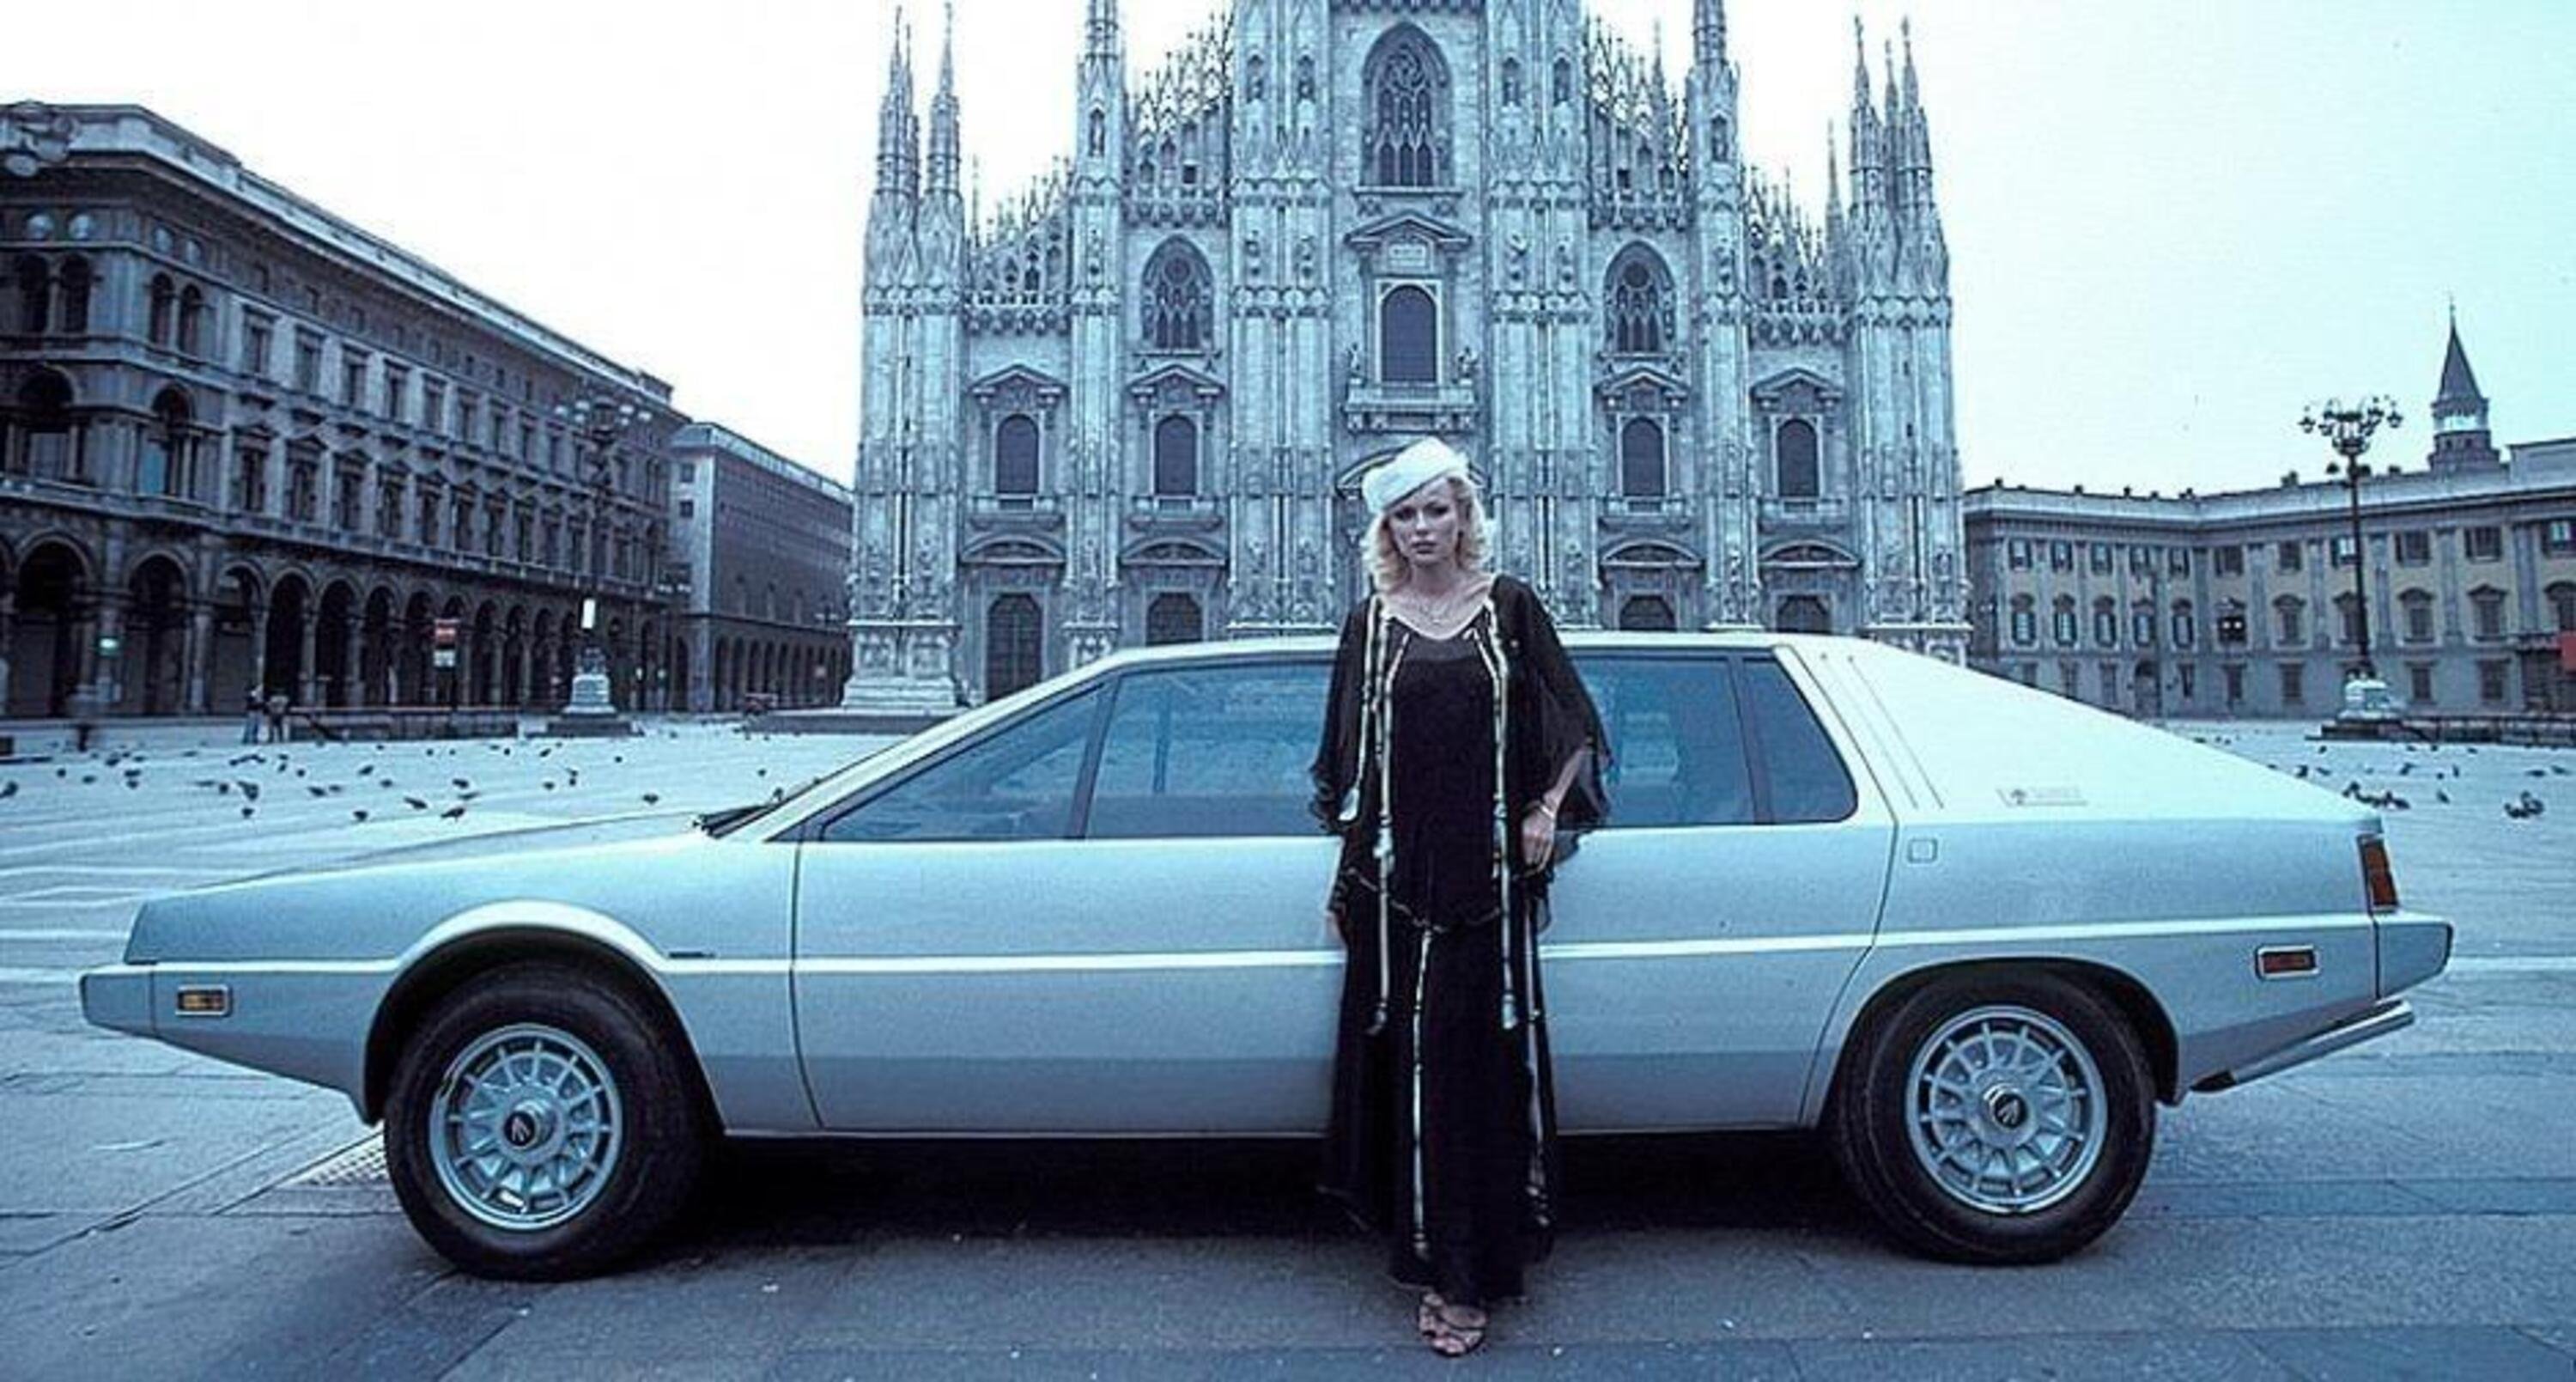 Medici Maserati, Milano 70s: la bella bionda e la bella di Giugiaro [V8 5.0 6 posti]